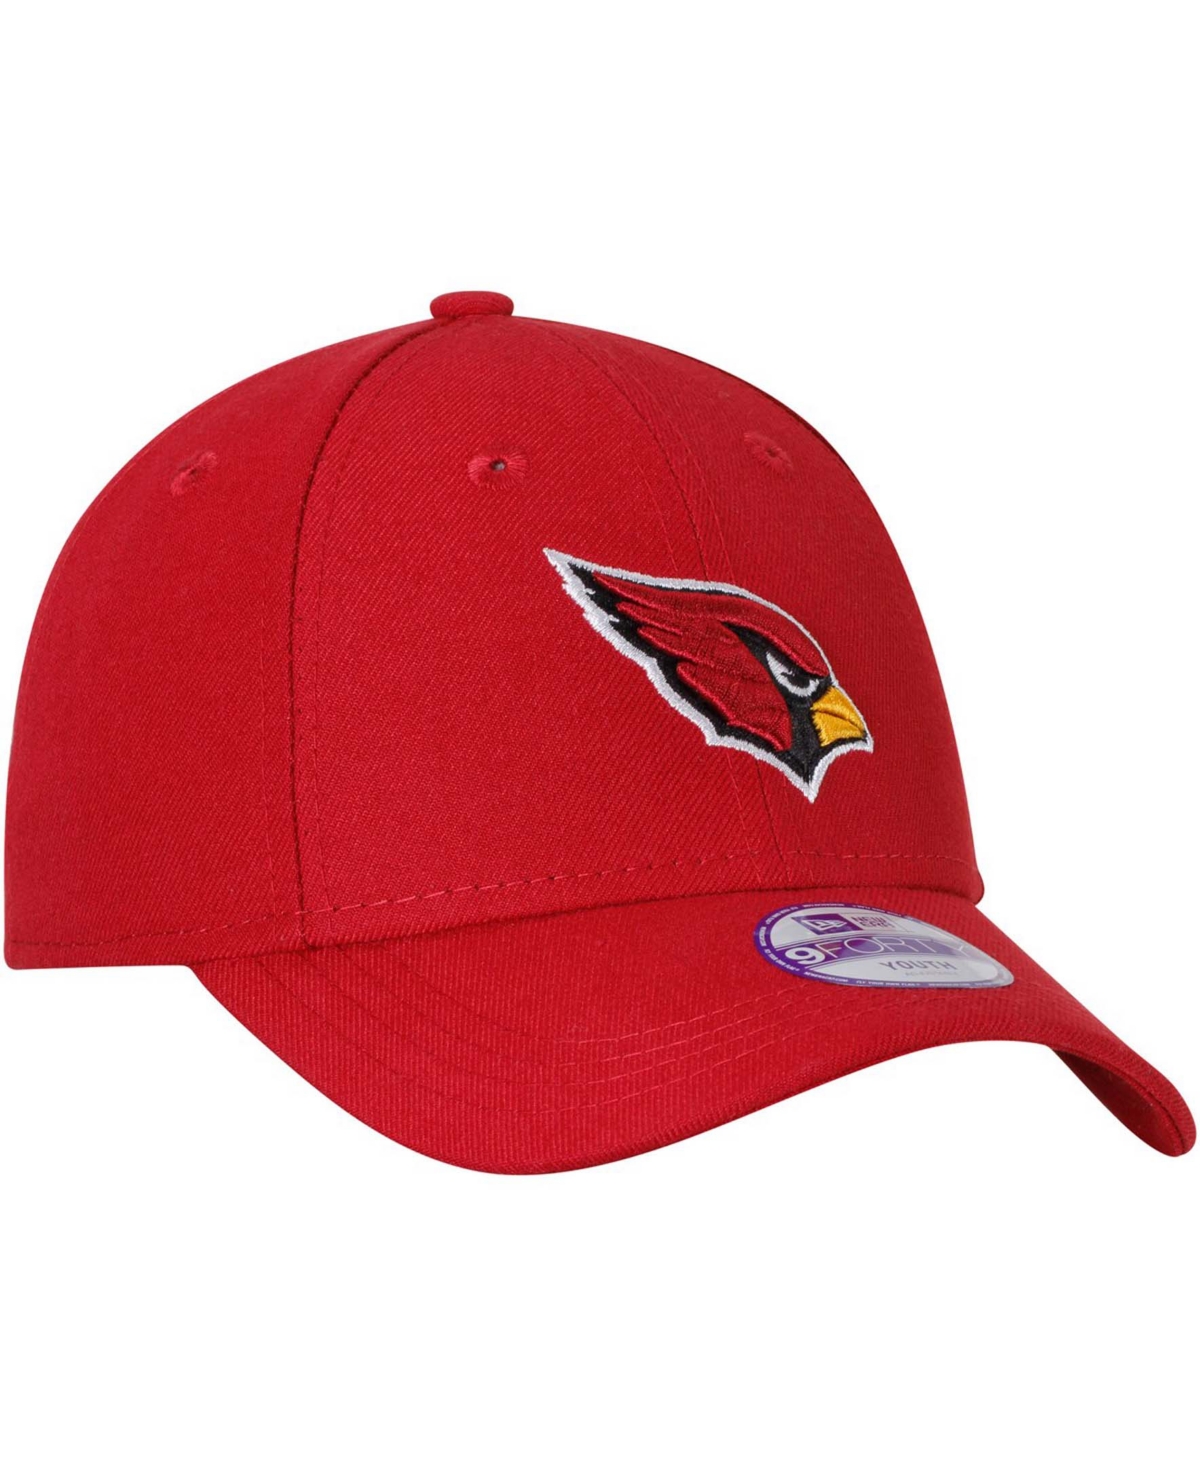 Shop New Era Big Boys And Girls Cardinal Arizona Cardinals League 9forty Adjustable Hat